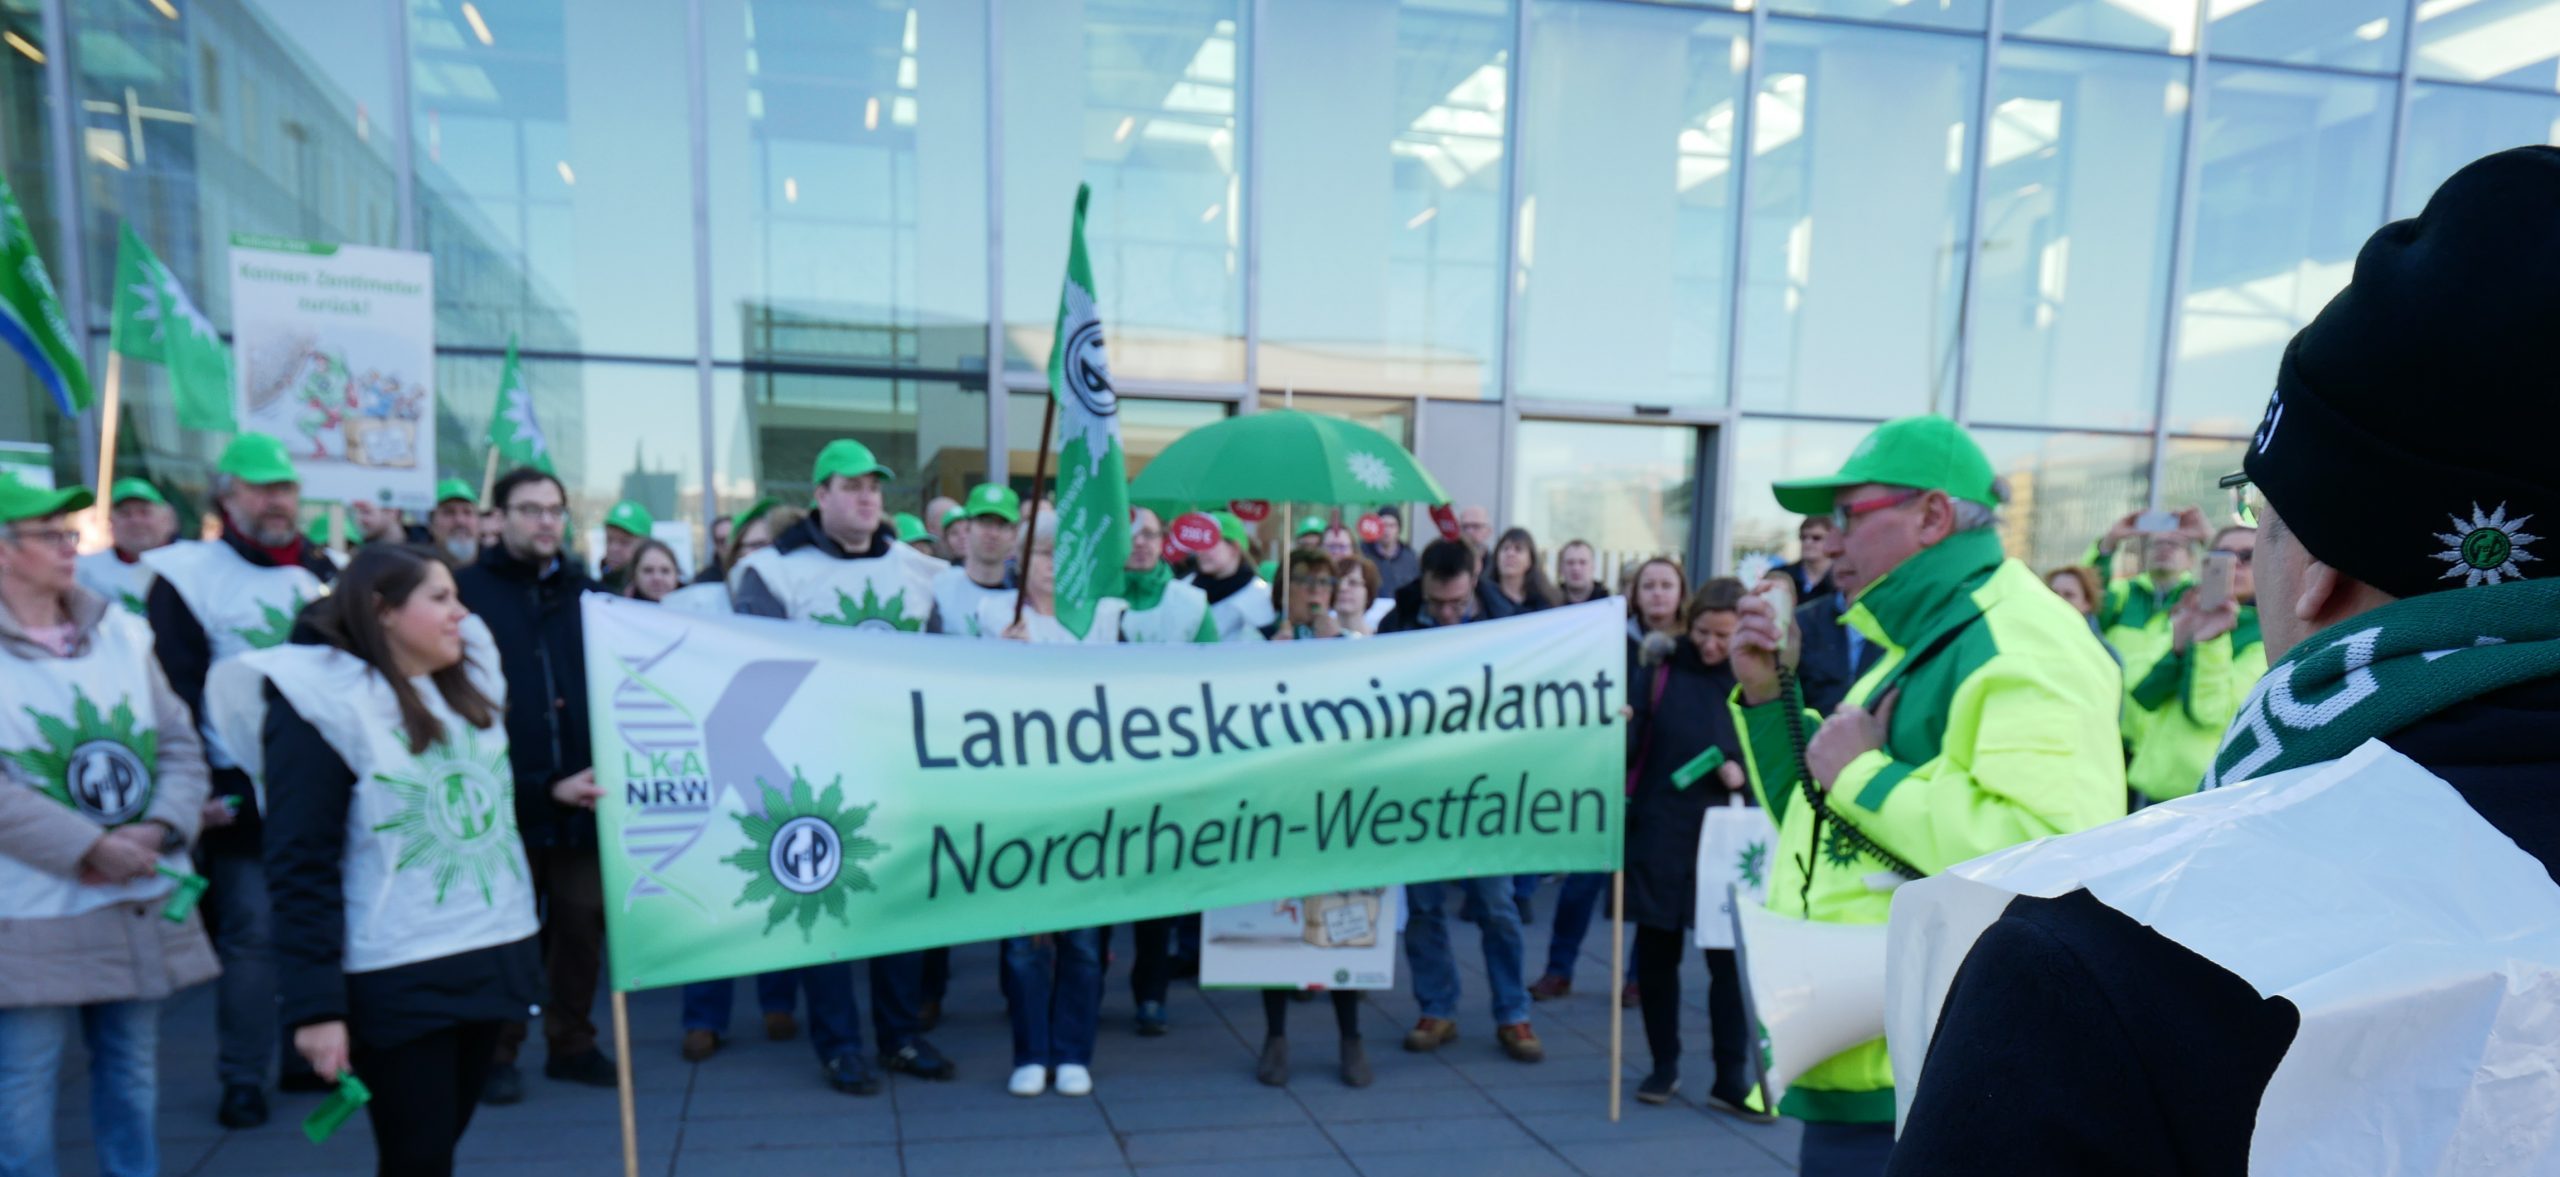 Demonstranten vor dem Landeskriminalamt NRW